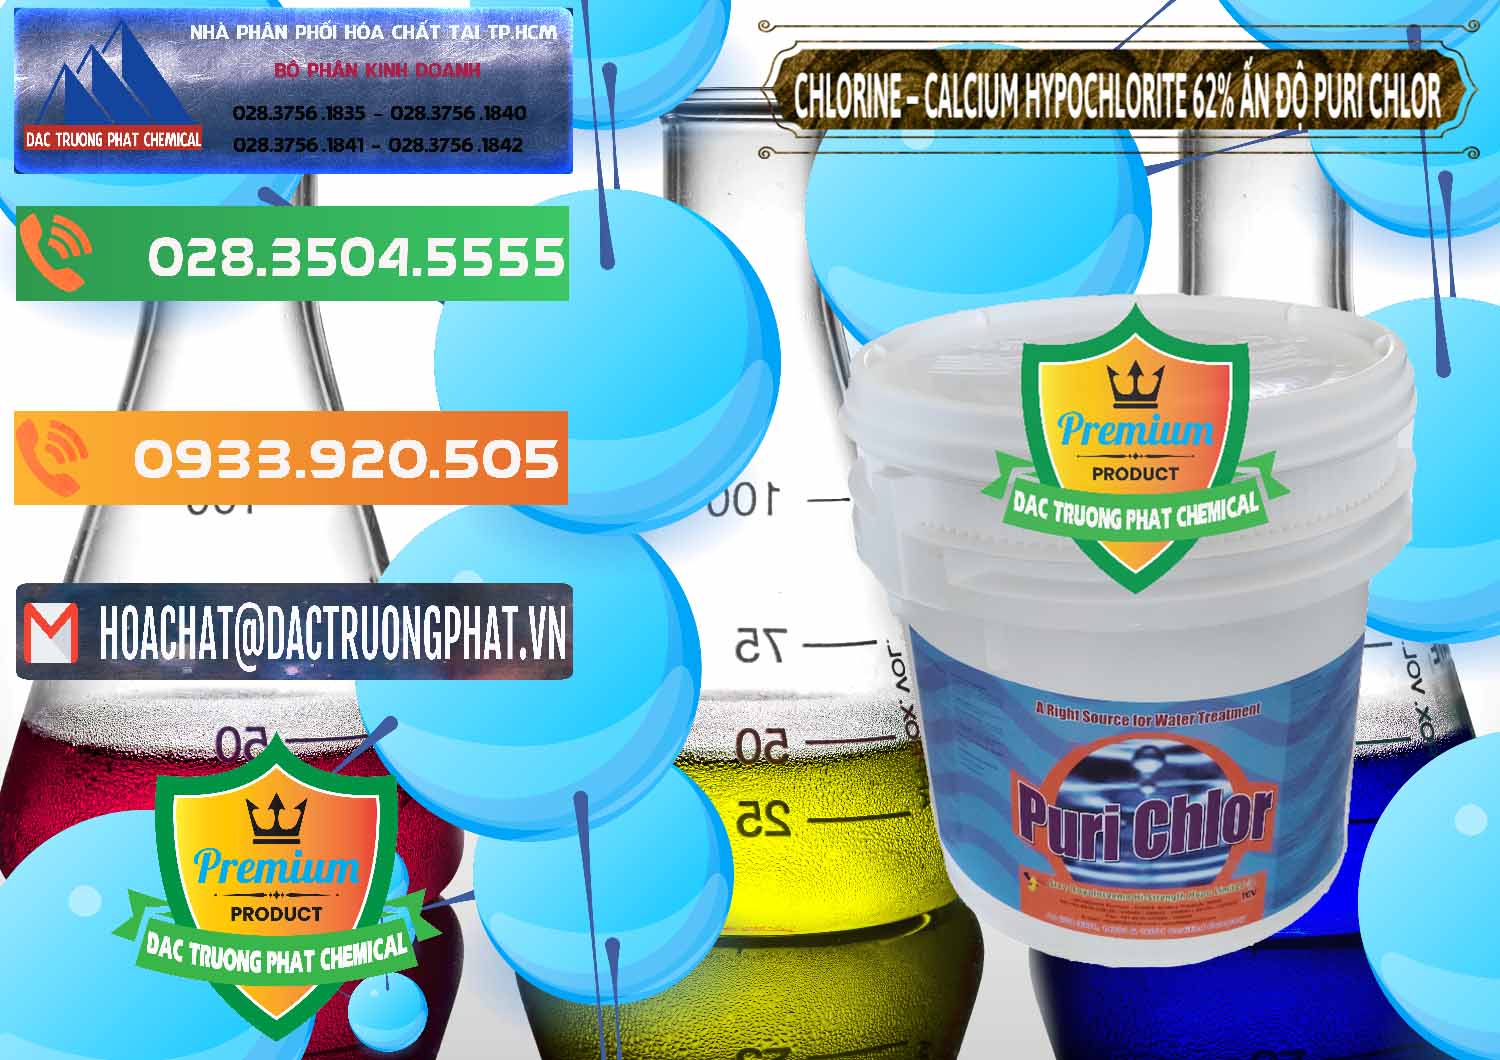 Bán - phân phối Chlorine – Clorin 62% Puri Chlo Ấn Độ India - 0052 - Công ty cung cấp và phân phối hóa chất tại TP.HCM - hoachatxulynuoc.com.vn